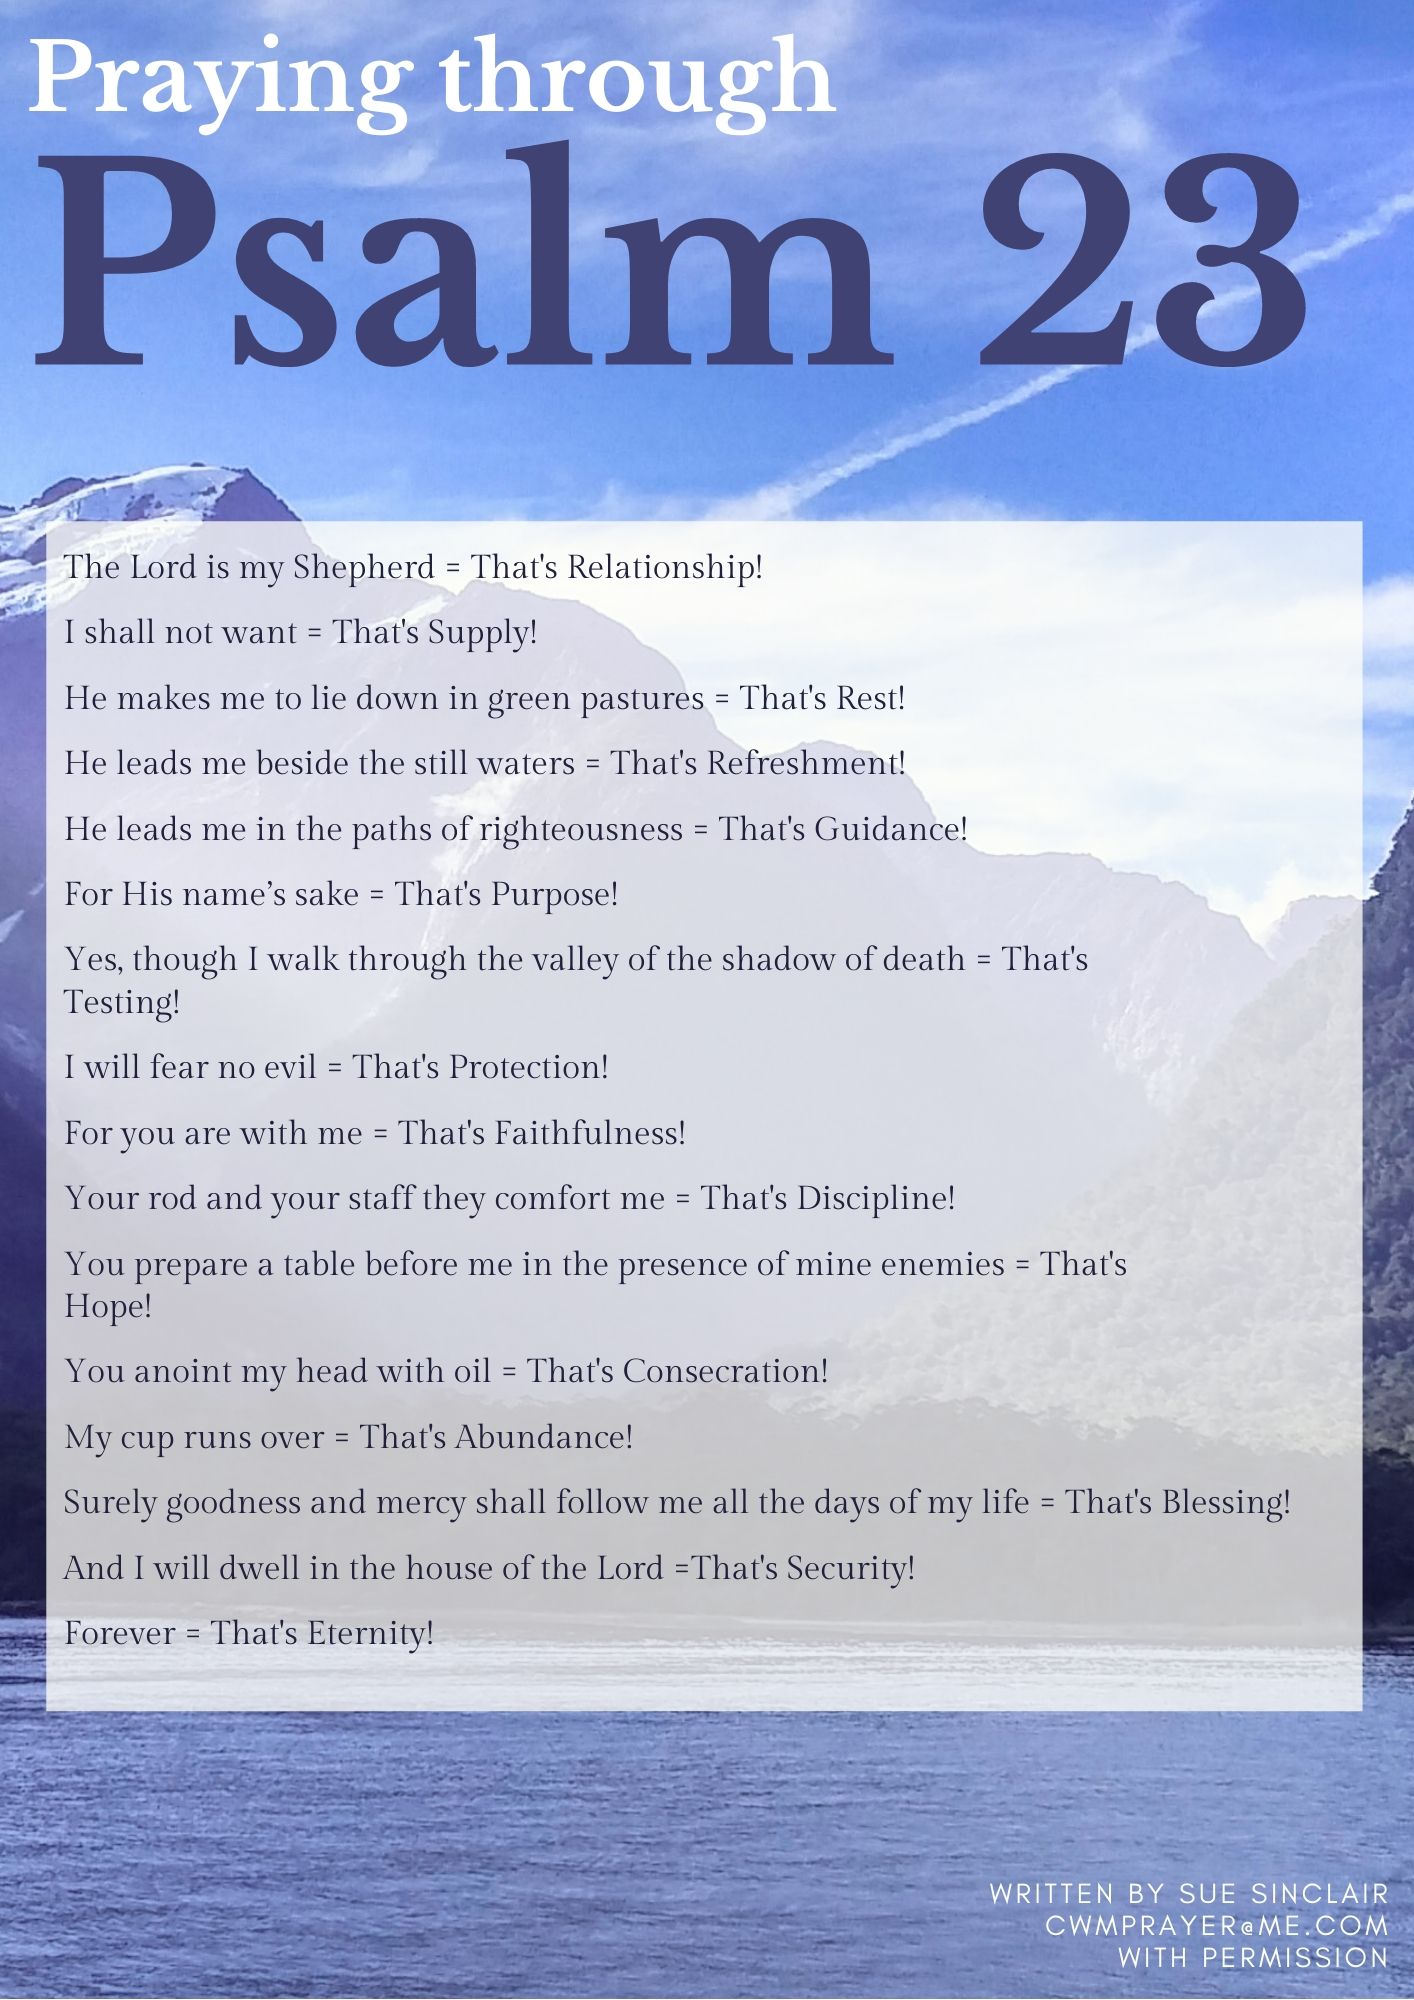 Praying through Psalm 23